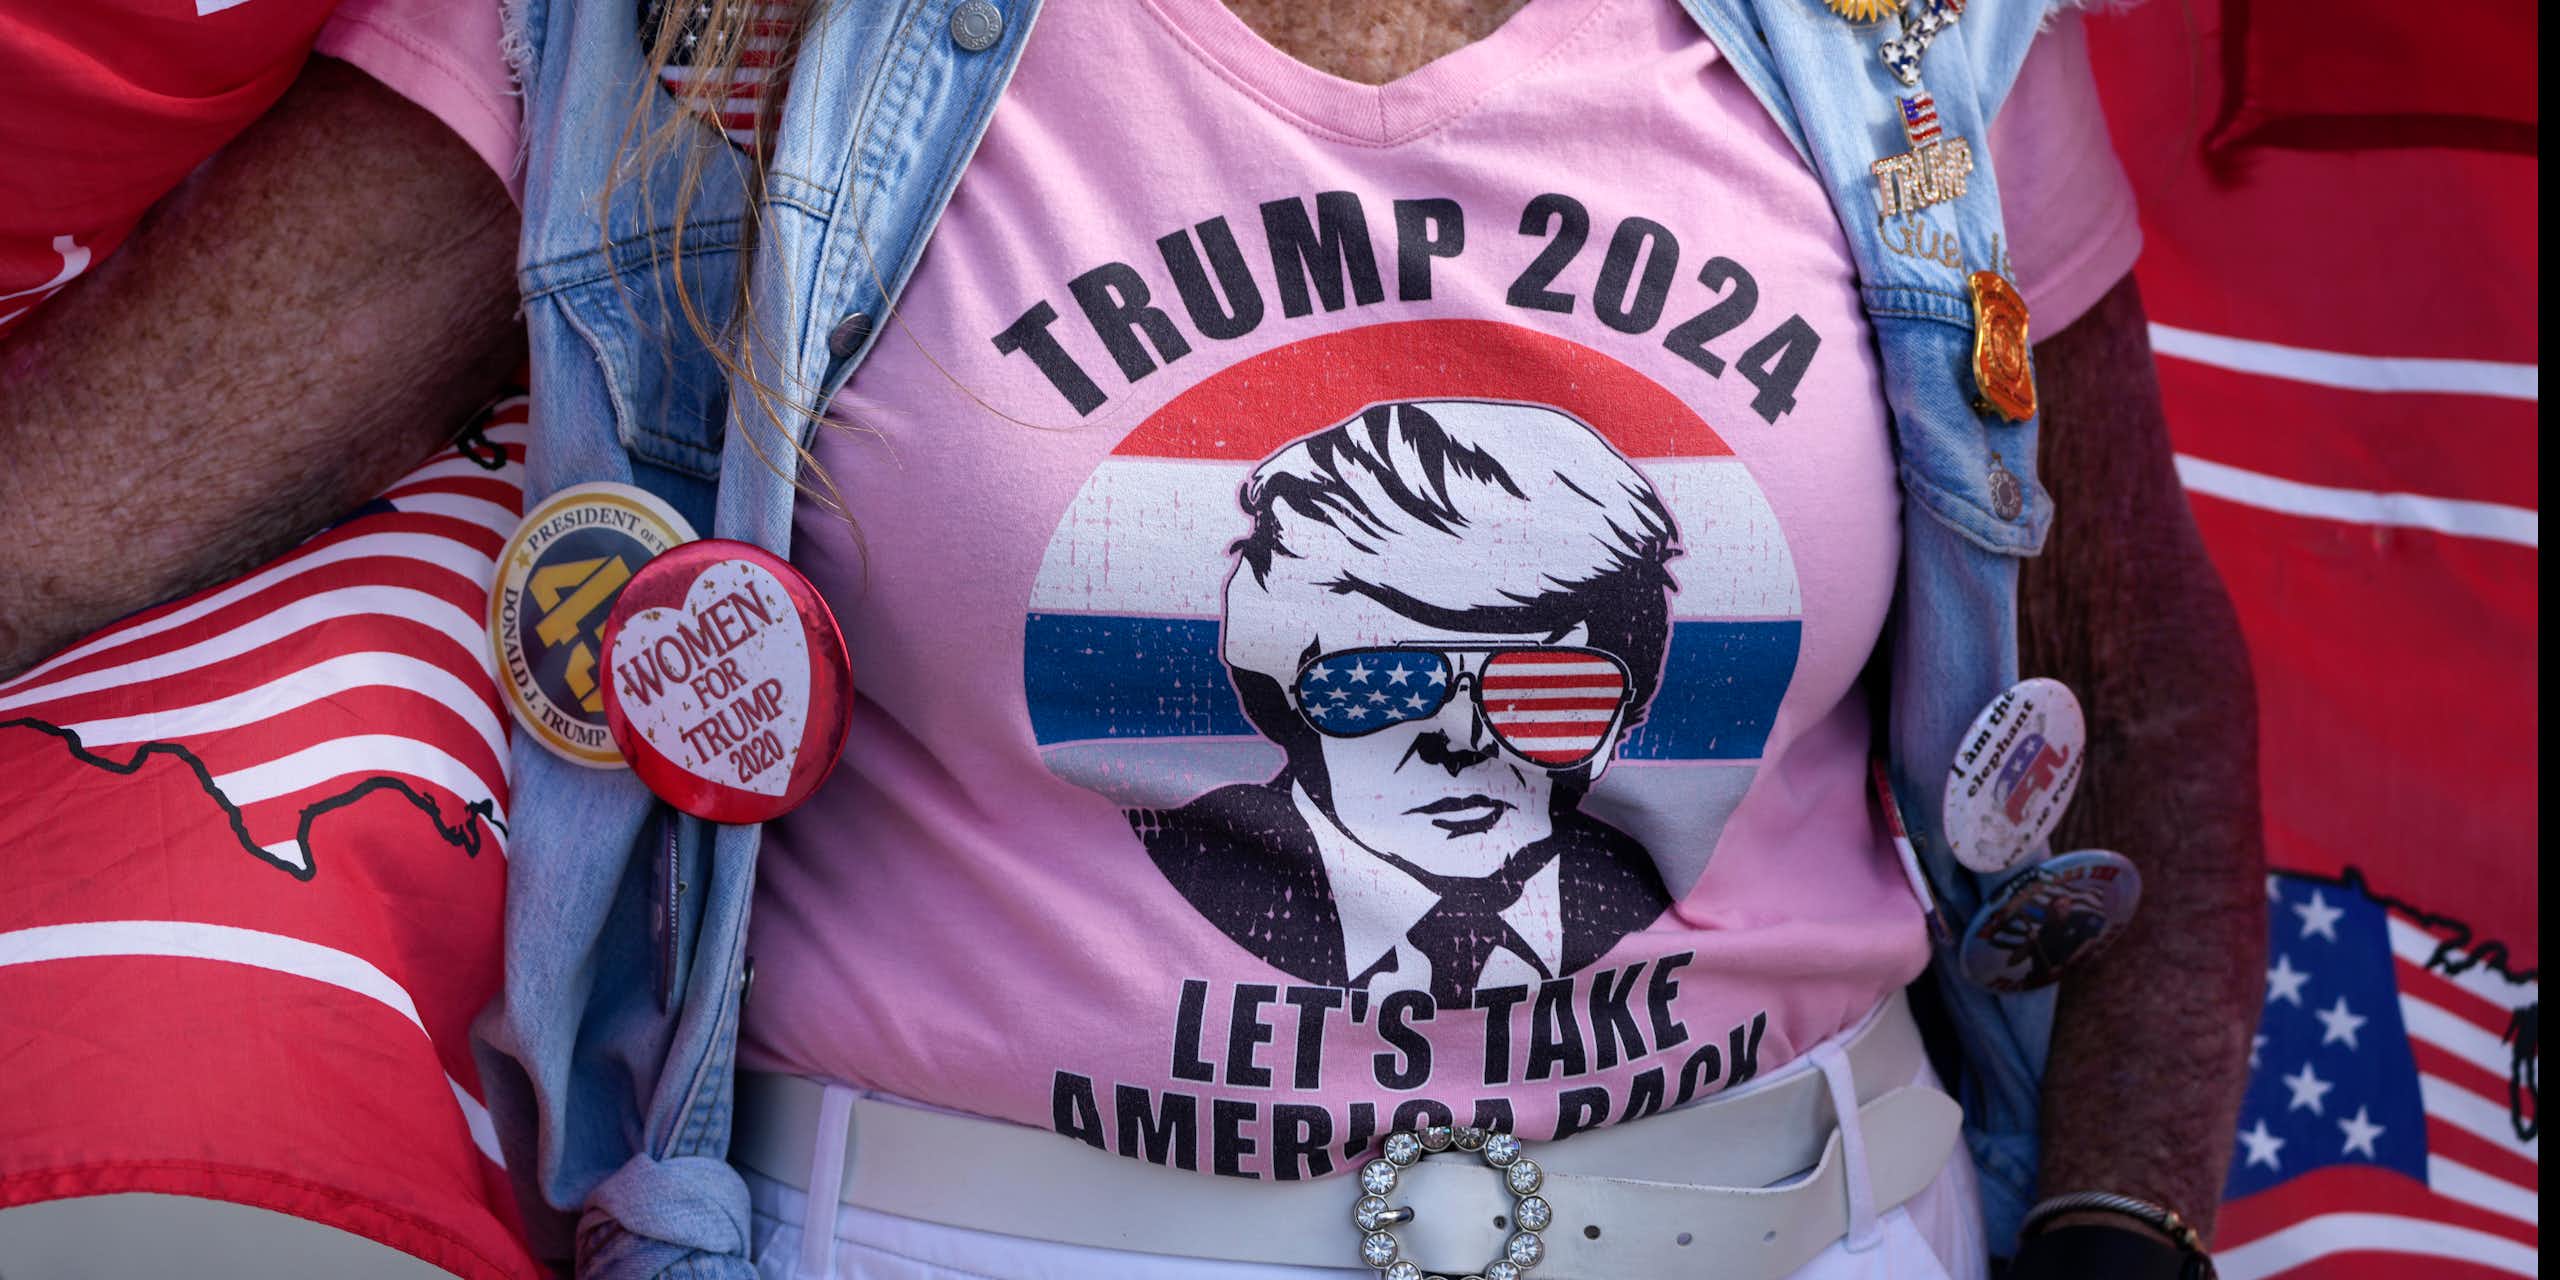 Closeup of a Trump 2024 campaign T-shirt